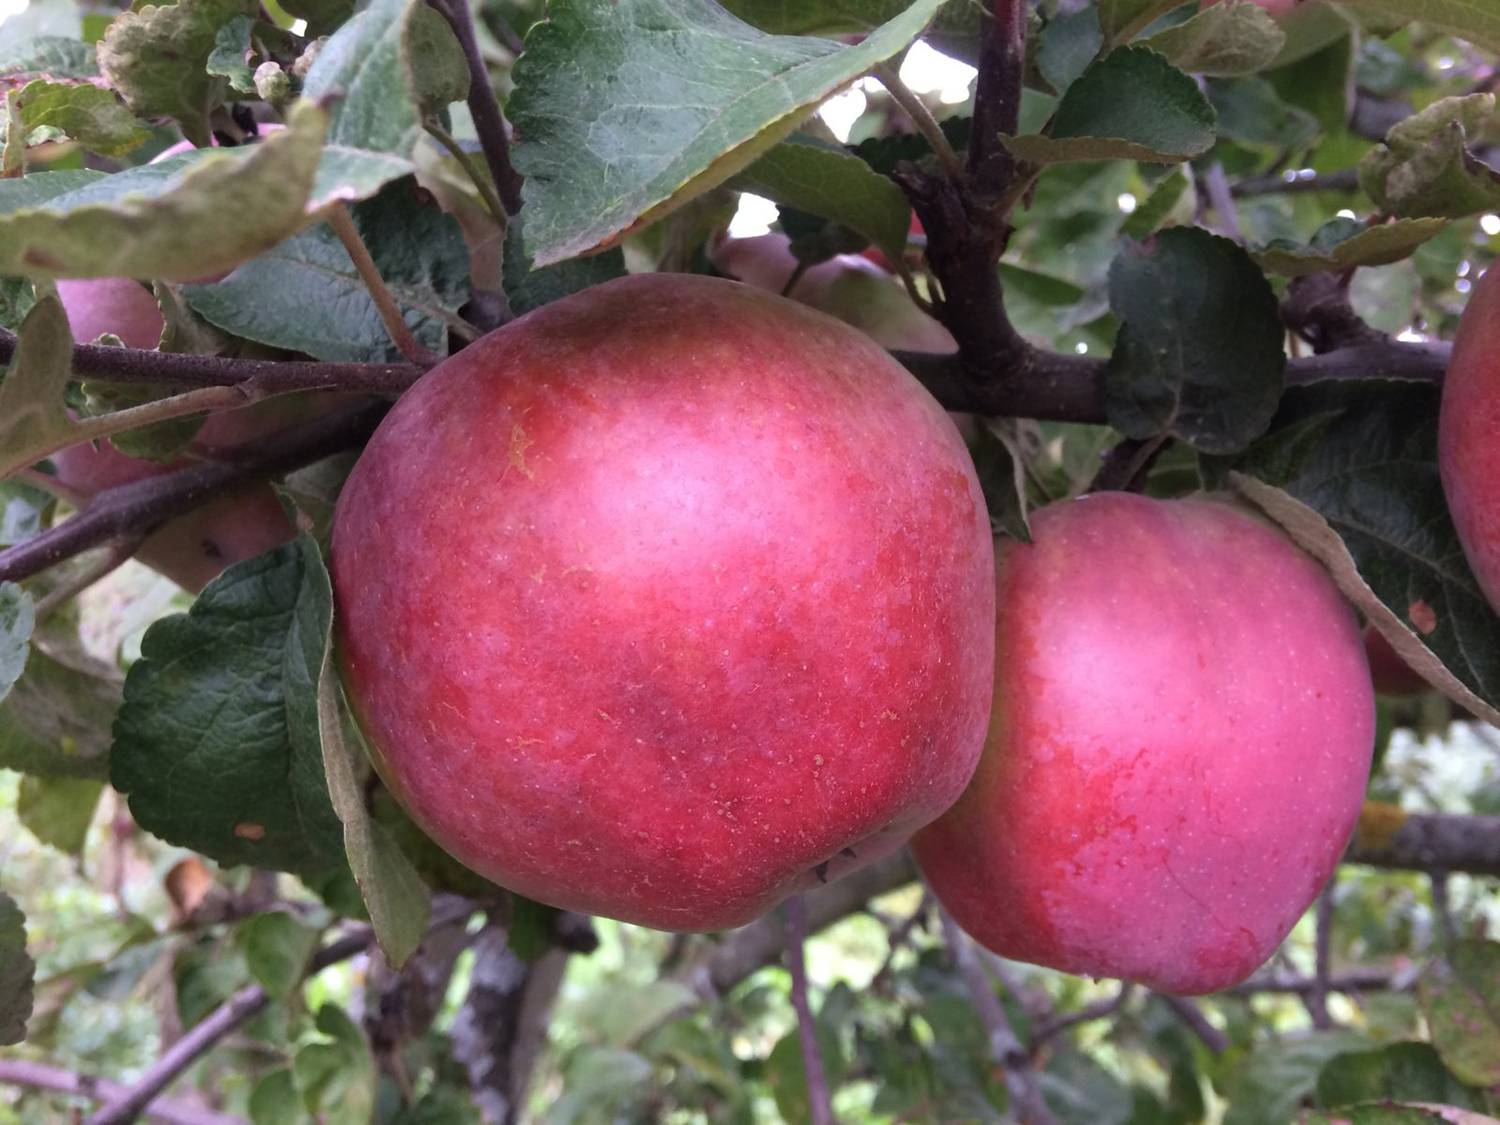 Описание сорта яблони подарок графскому: фото яблок, важные характеристики, урожайность с дерева